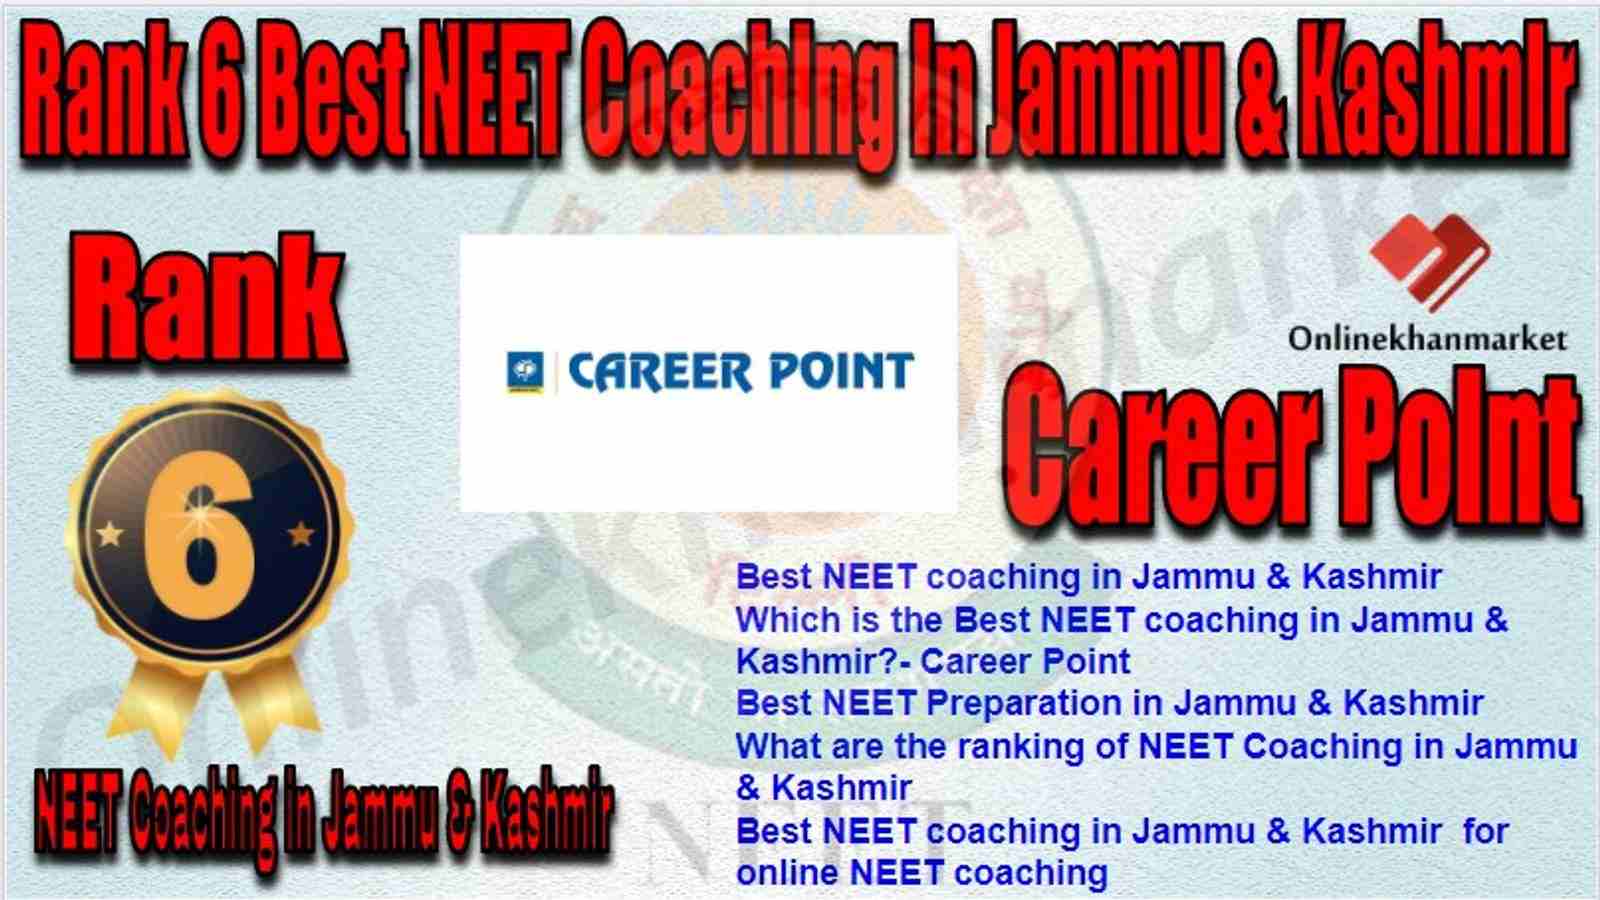 Rank 6 Best NEET Coaching in jammu &kashmir